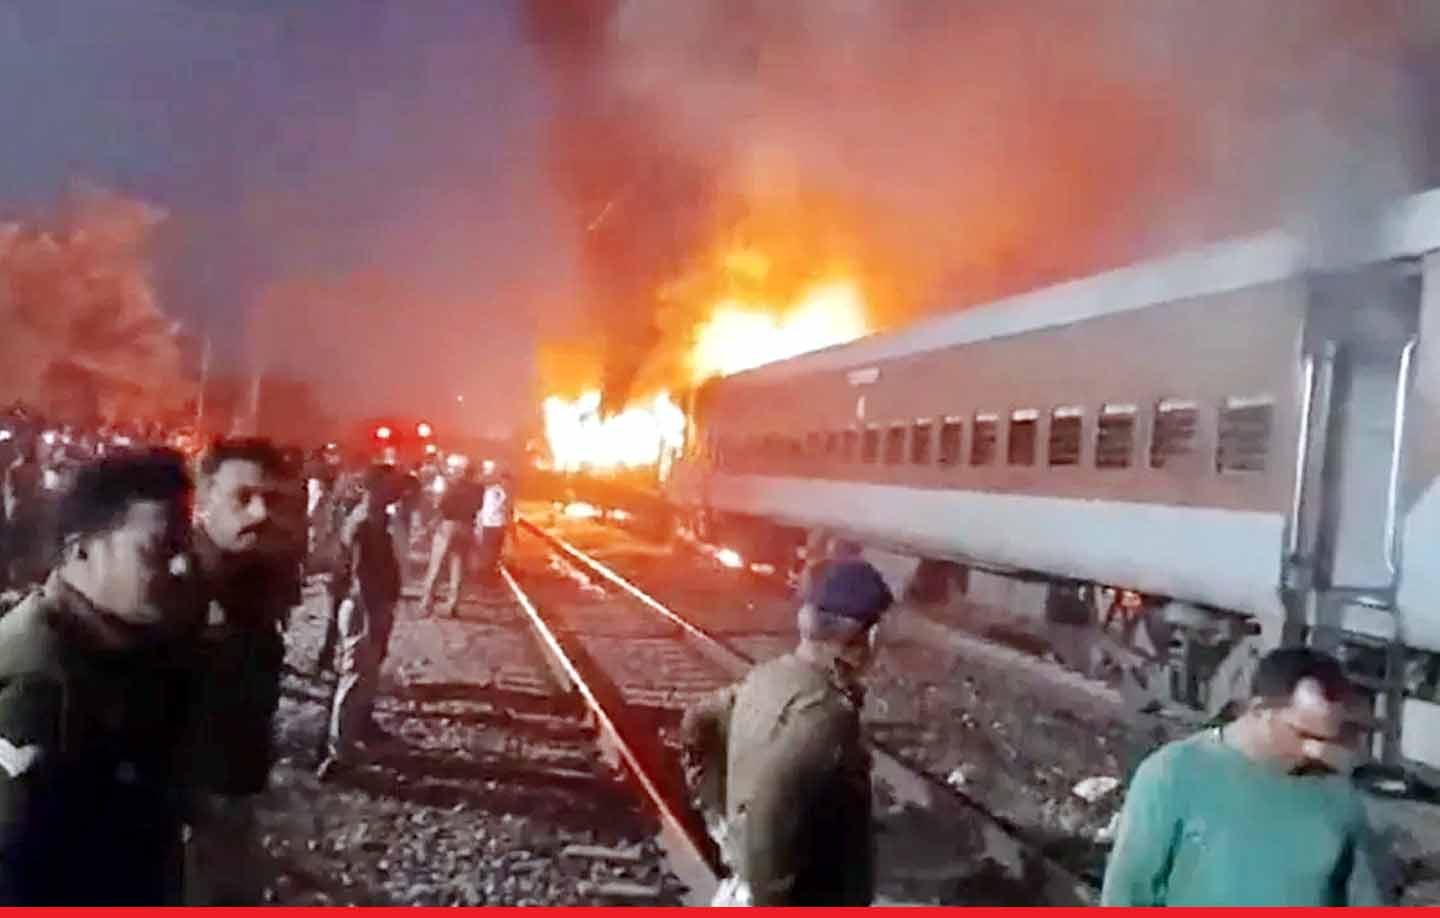 नई दिल्ली-दरभंगा एक्सप्रेस में लगी भीषण आग, यात्रियों ने कूदकर बचाई जान, आठ जख्मी